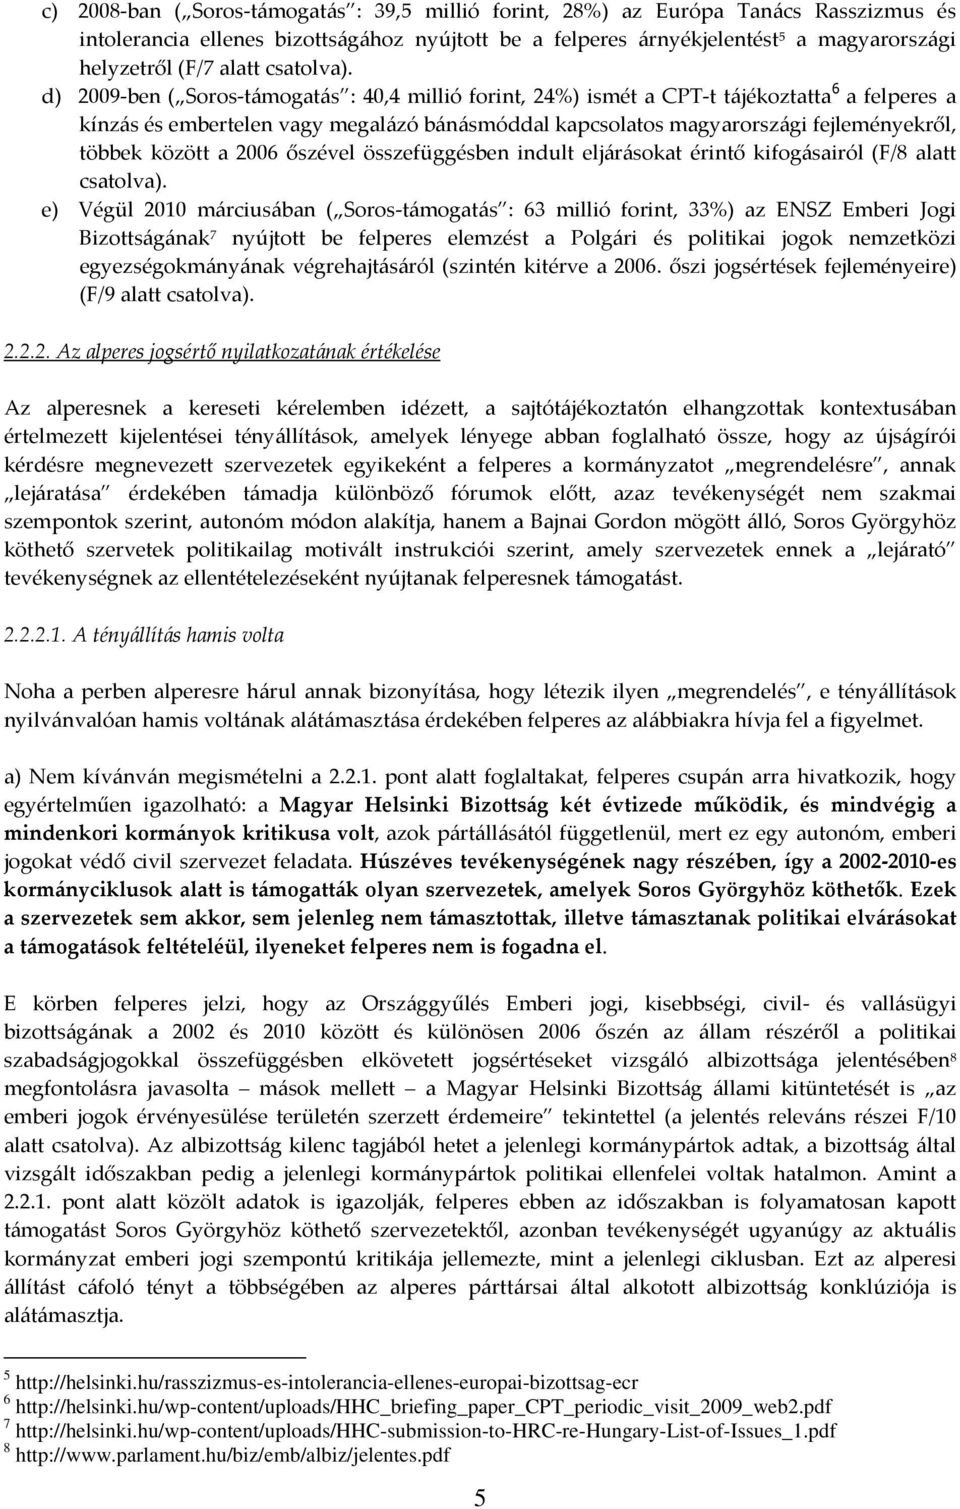 d) 2009-ben ( Soros-támogatás : 40,4 millió forint, 24%) ismét a CPT-t tájékoztatta 6 a felperes a kínzás és embertelen vagy megalázó bánásmóddal kapcsolatos magyarországi fejleményekről, többek